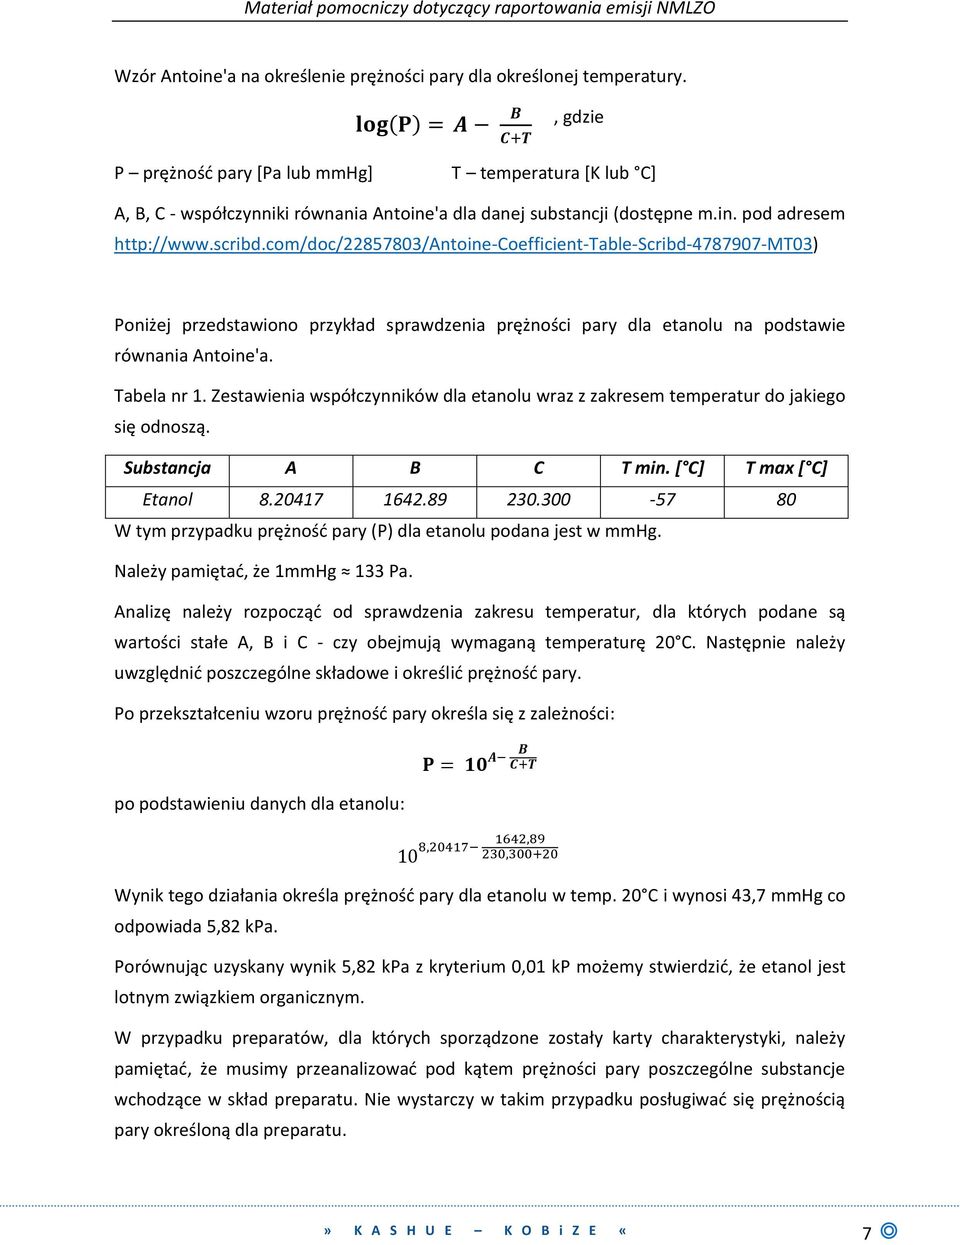 com/doc/22857803/antoine-coefficient-table-scribd-4787907-mt03) Poniżej przedstawiono przykład sprawdzenia prężności pary dla etanolu na podstawie równania Antoine'a. Tabela nr 1.